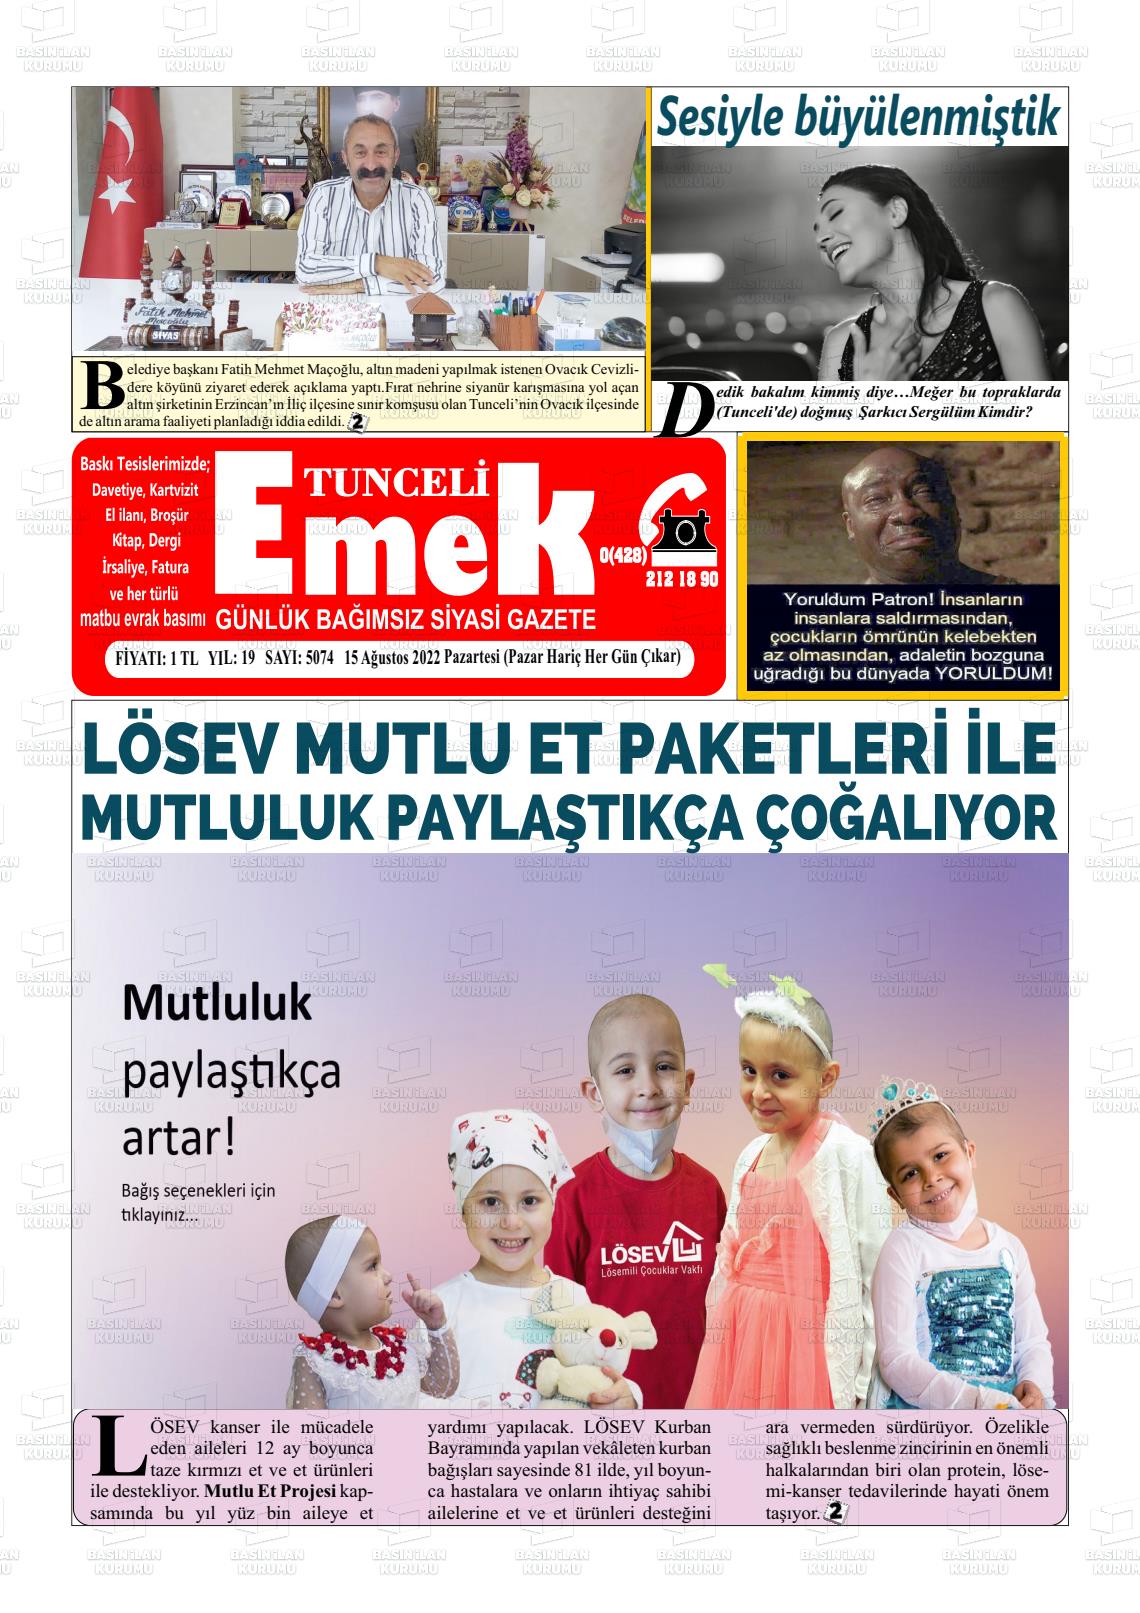 15 Ağustos 2022 Tunceli Emek Gazete Manşeti